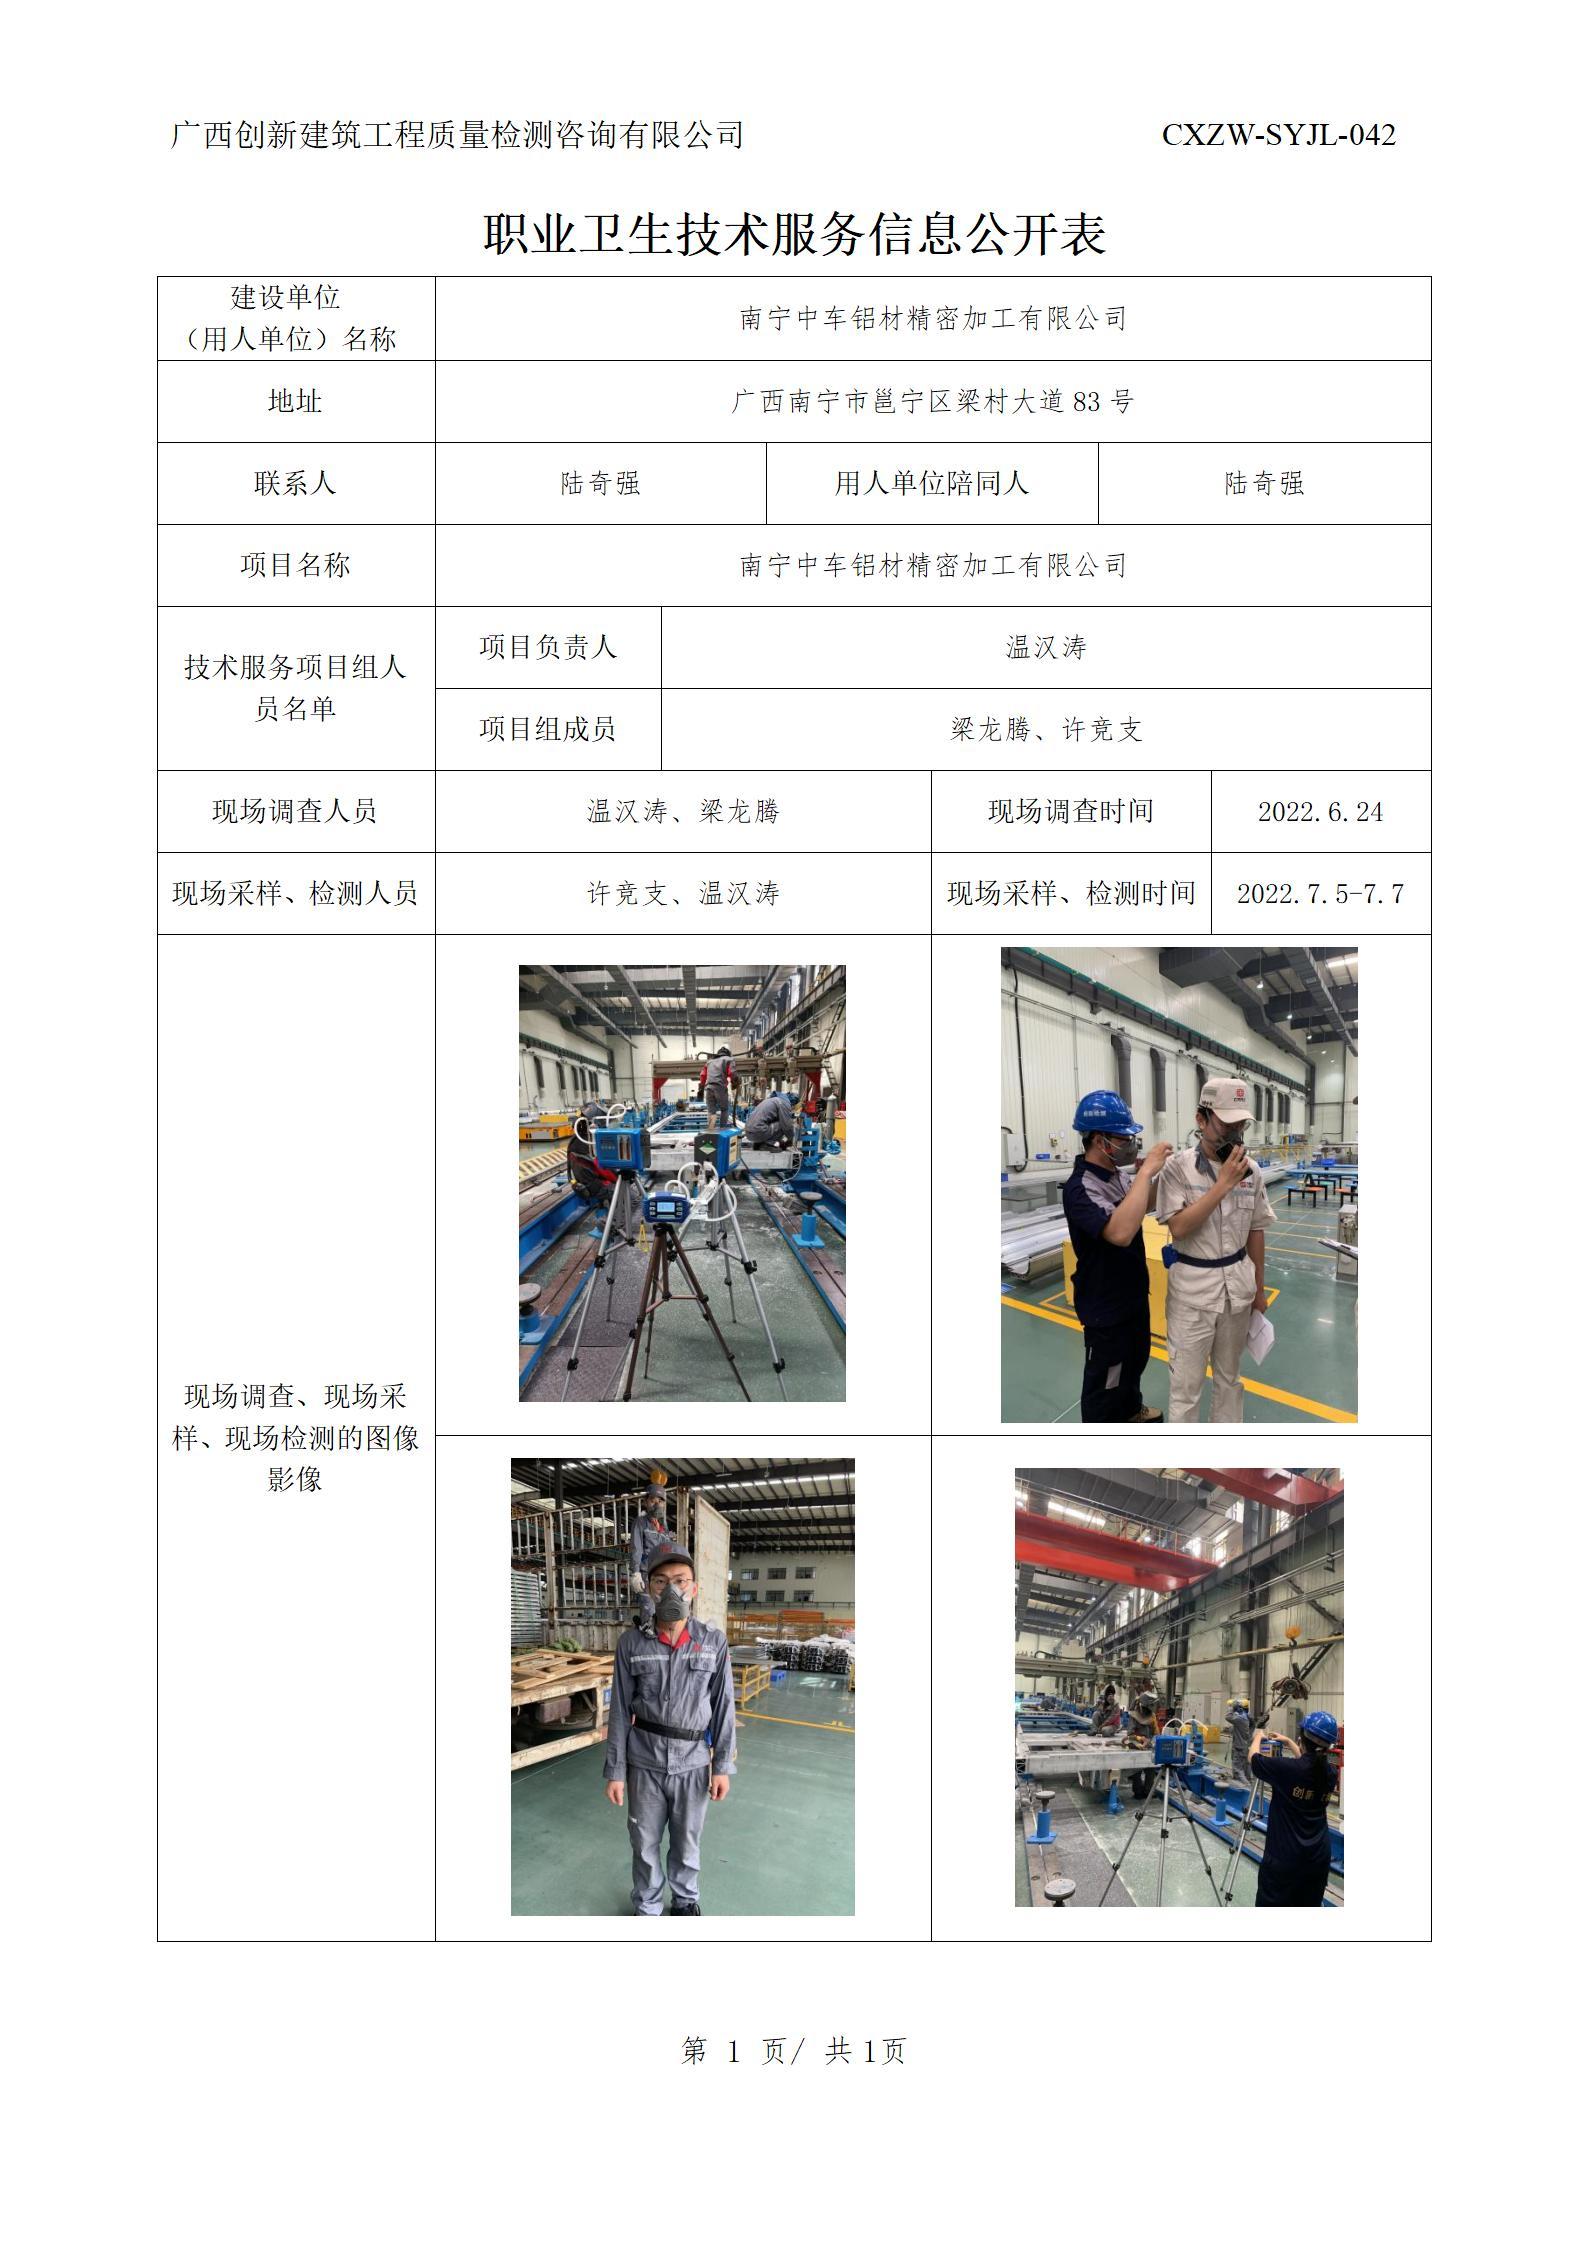 職業衛生信息公開-南寧中車鋁材精密加工有限公司